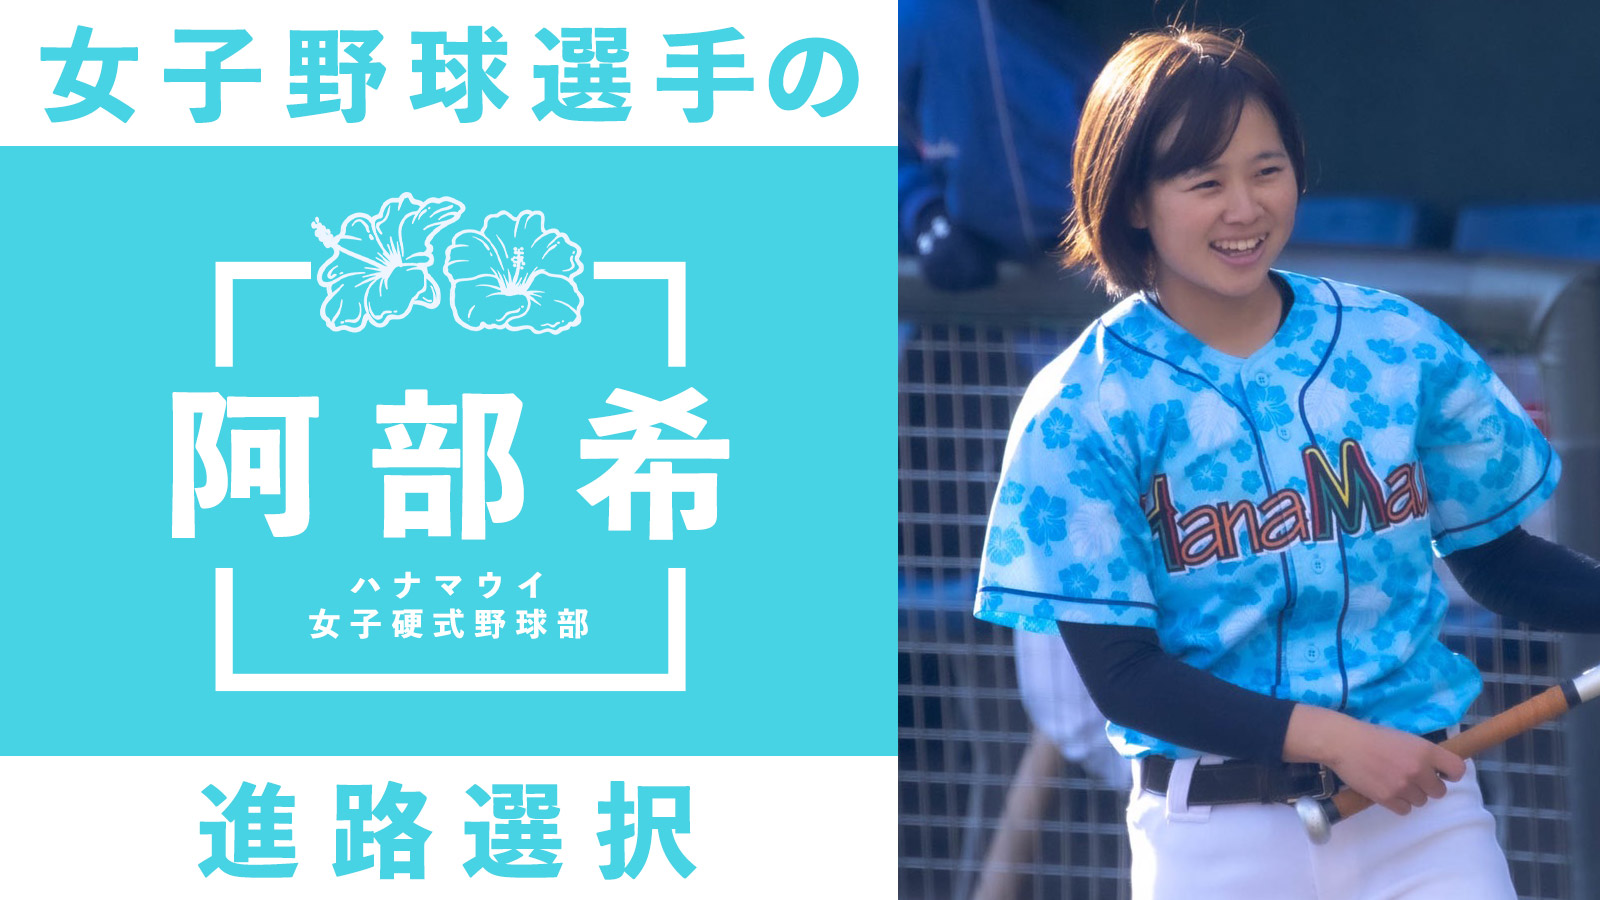 日体大男子野球部での練習とハナマウイでの活動を両立 U-18日本代表「阿部希」の選んだ進路